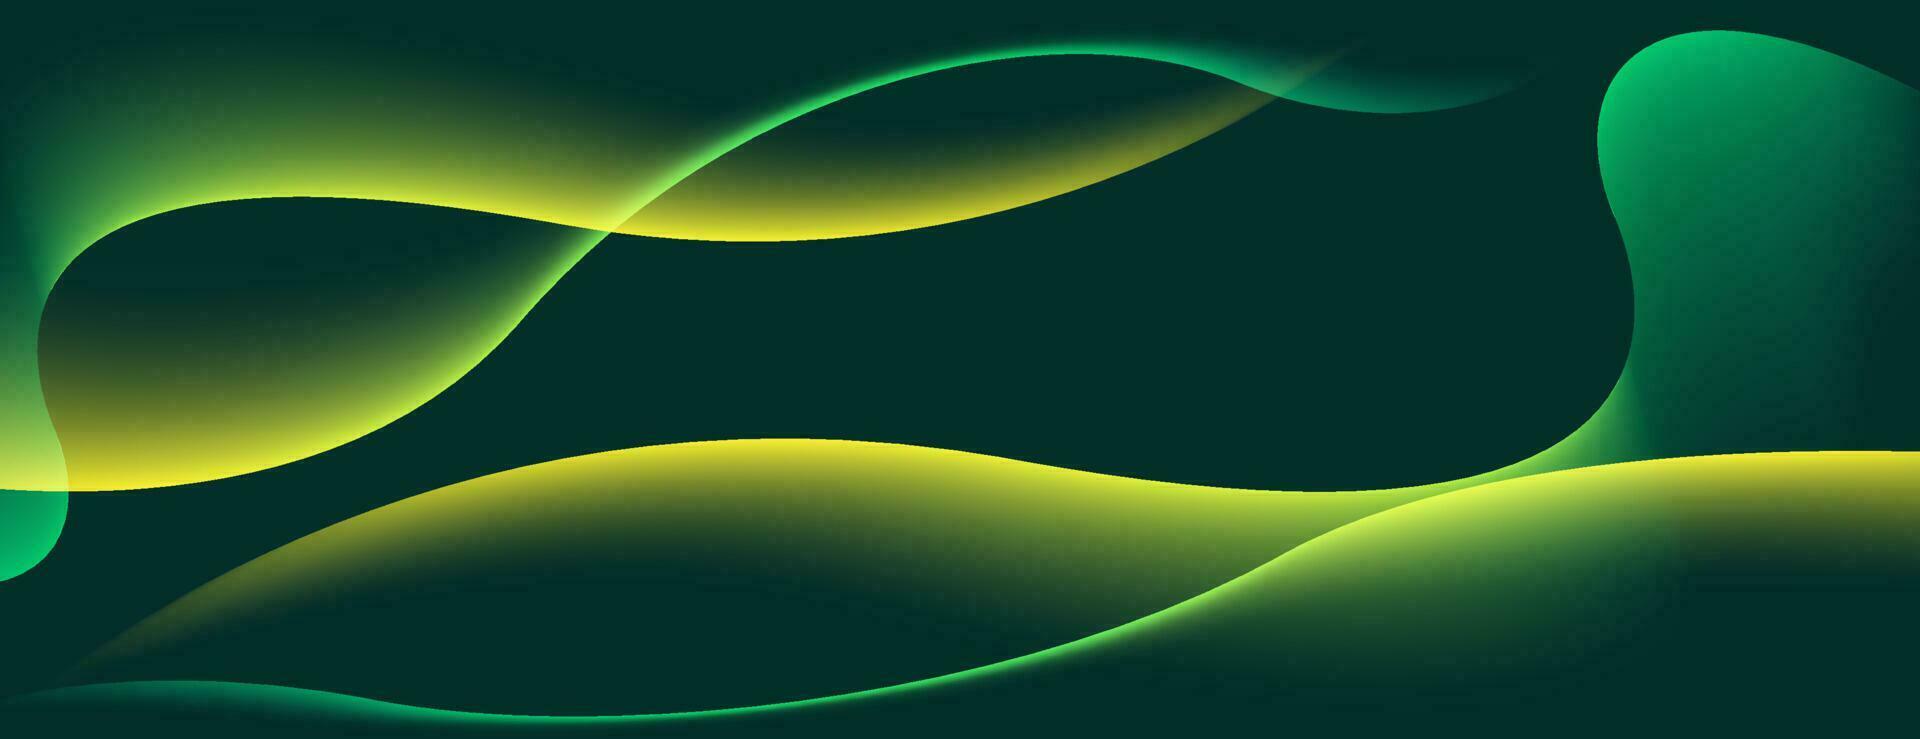 dynamisk våg abstrakt bakgrund med gult ljus. vektor formgivningsmall